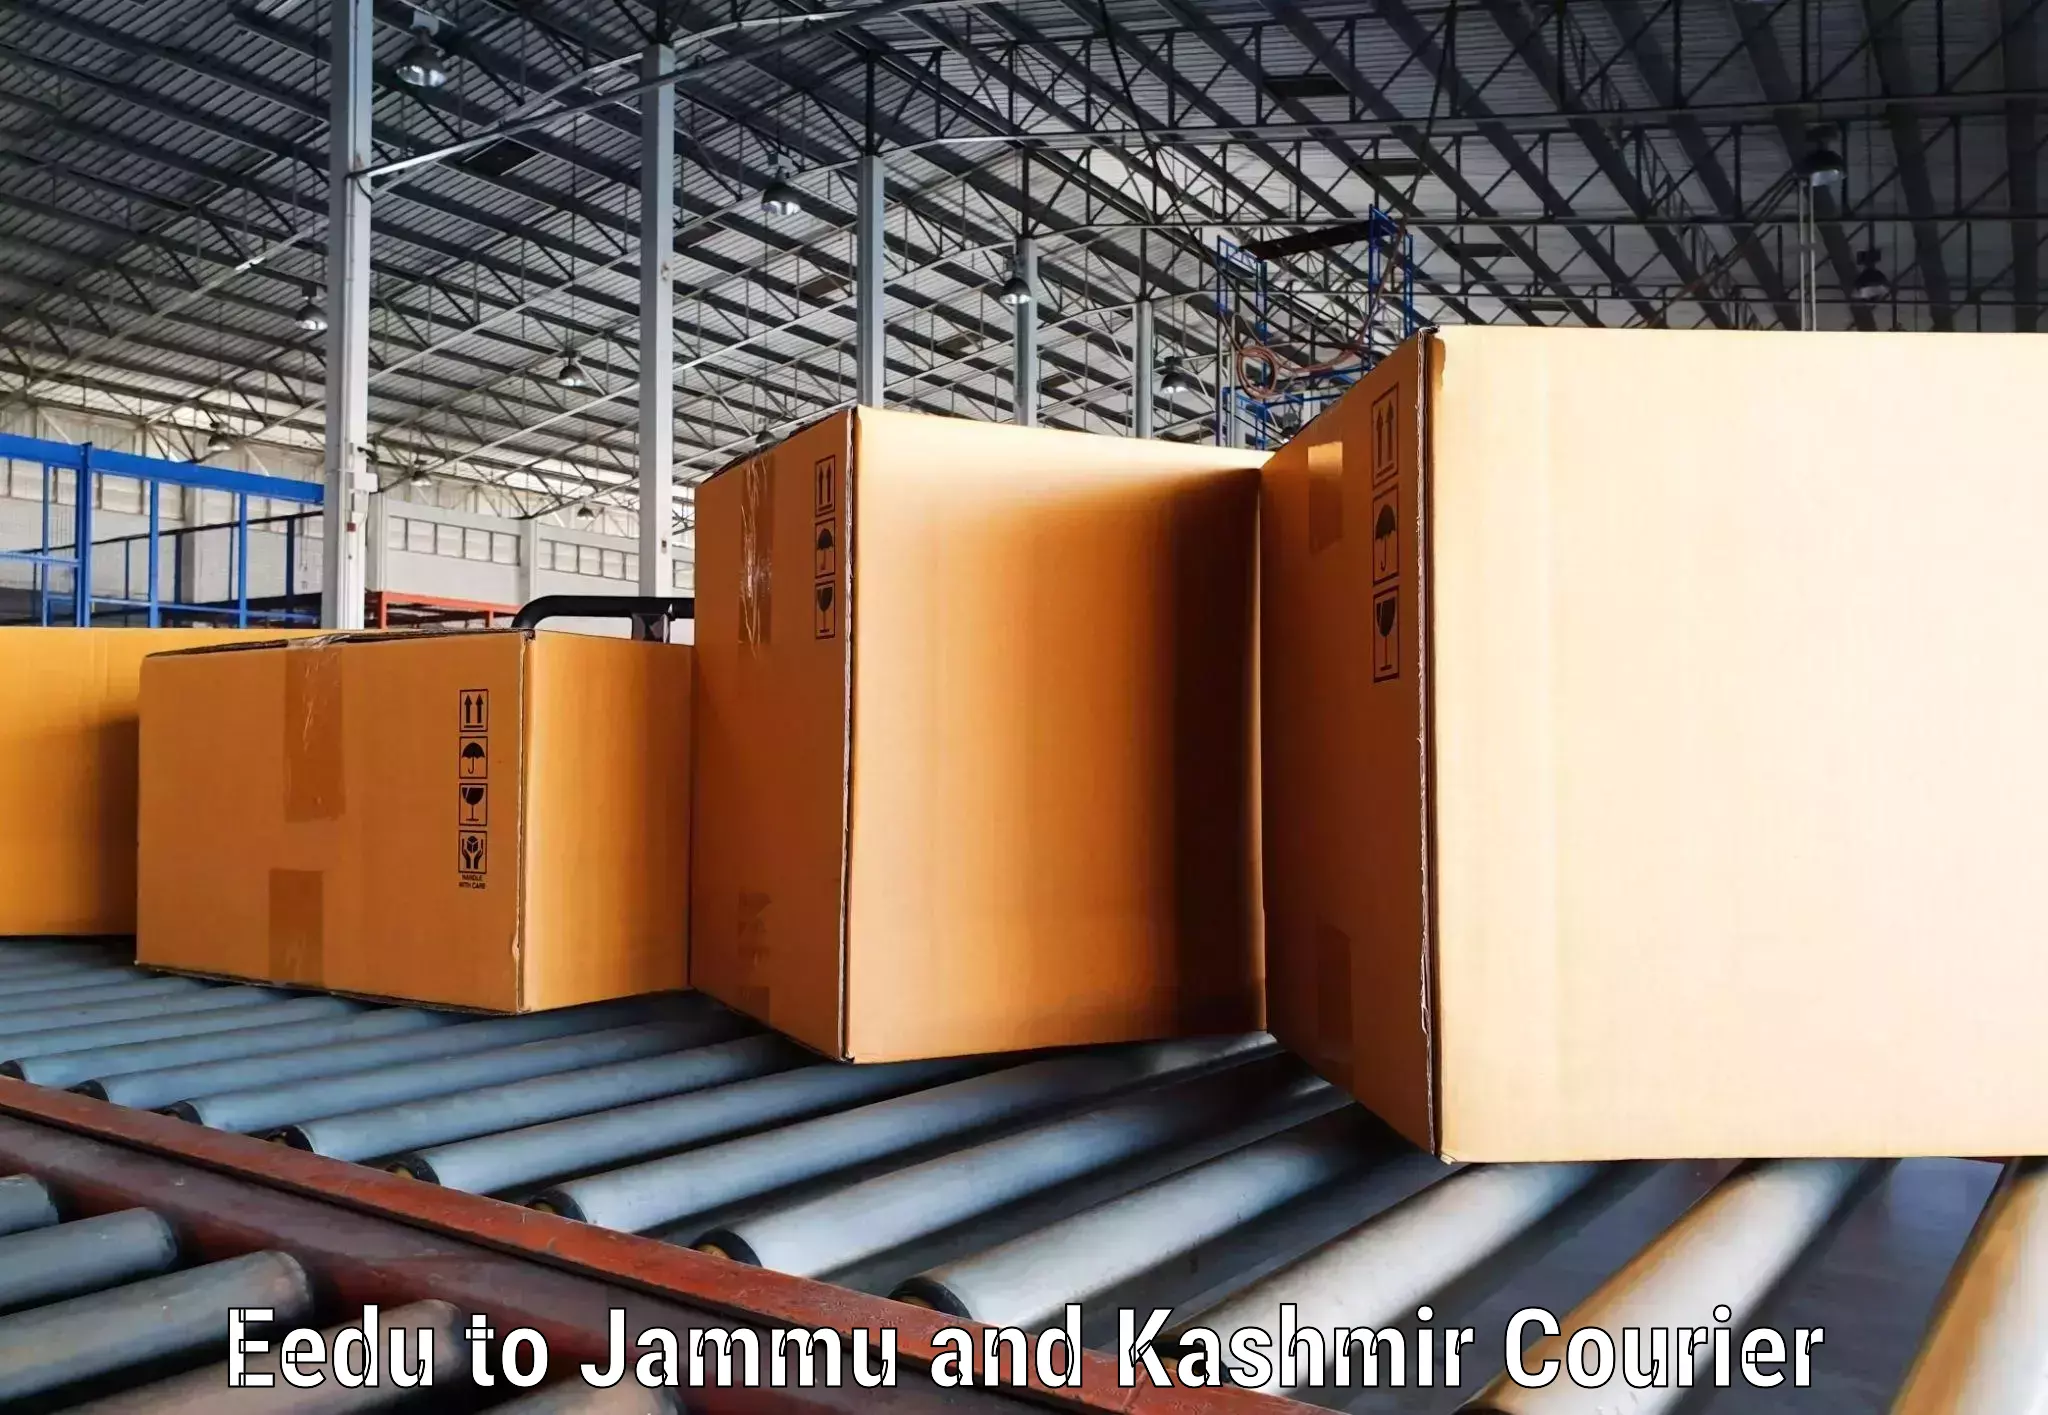 Smart logistics strategies Eedu to Jammu